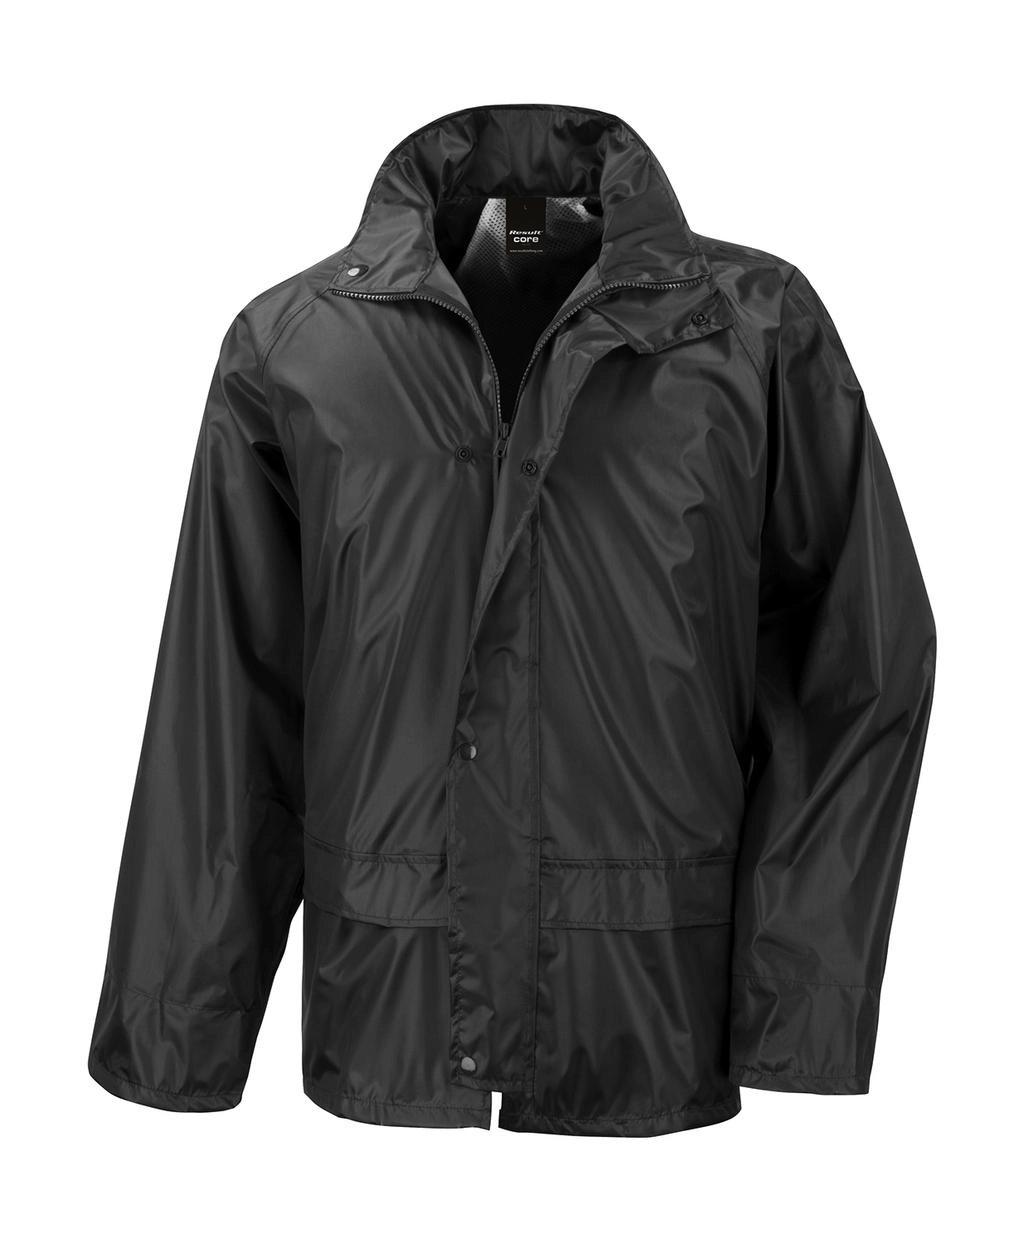 StormDri Jacket zum Besticken und Bedrucken in der Farbe Black mit Ihren Logo, Schriftzug oder Motiv.